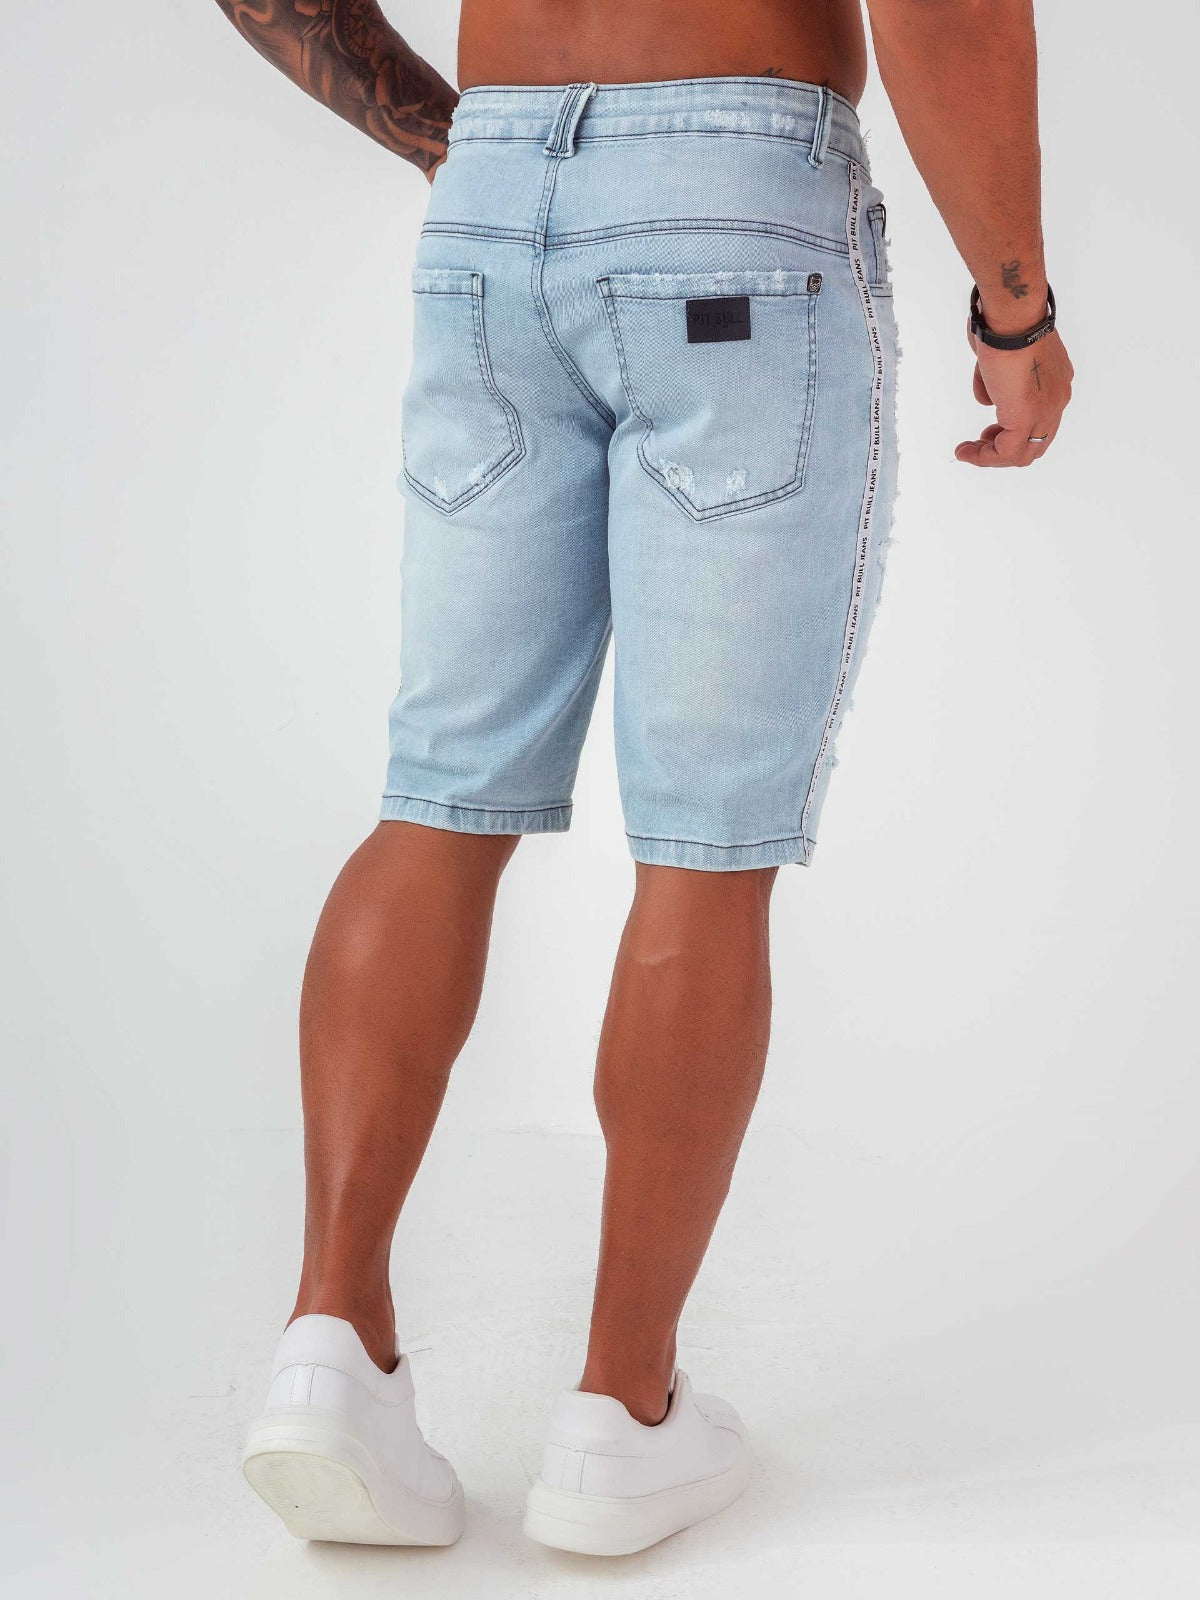 Pitbull Men's Jeans Shorts 62627